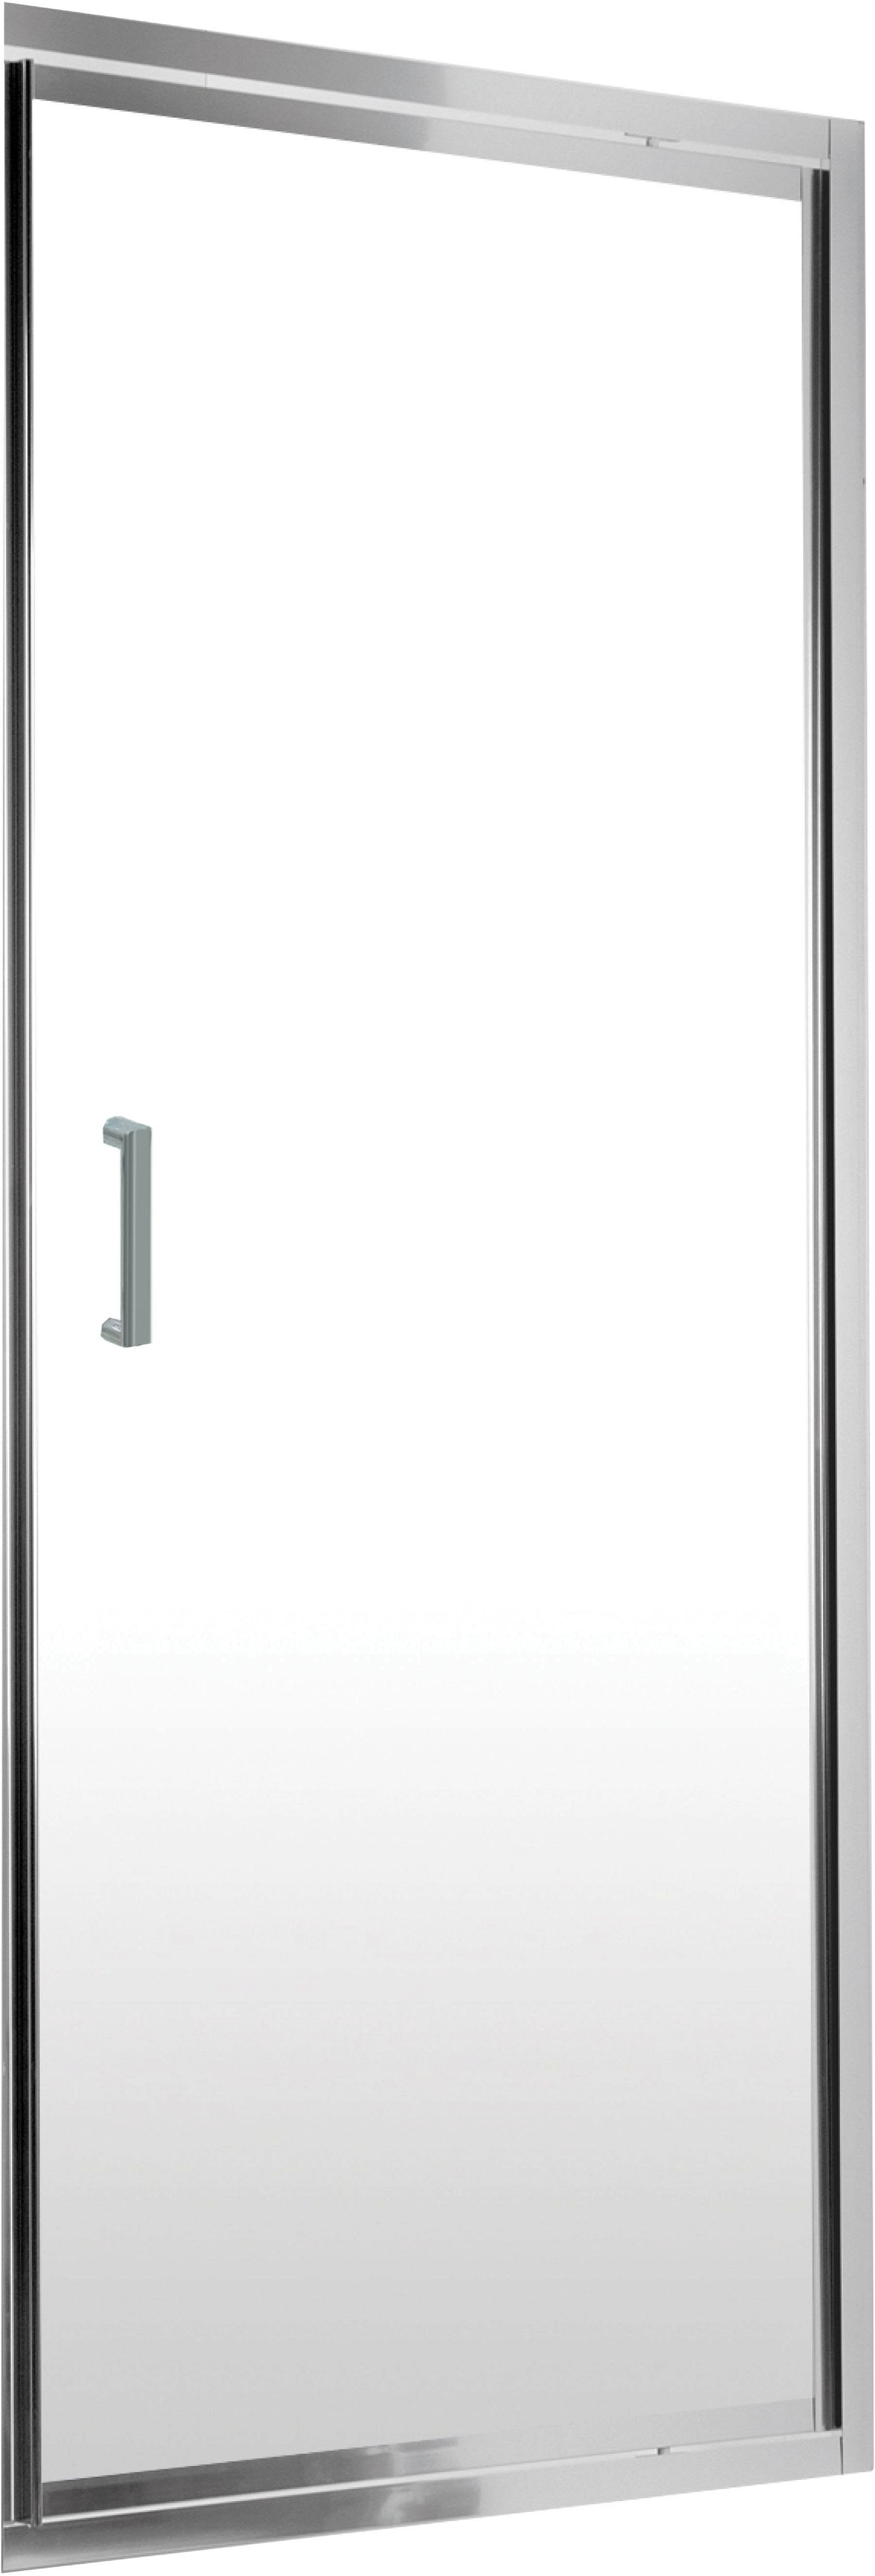 Drzwi prysznicowe wnękowe 80 cm - uchylne - KTJ_012D - Główne zdjęcie produktowe